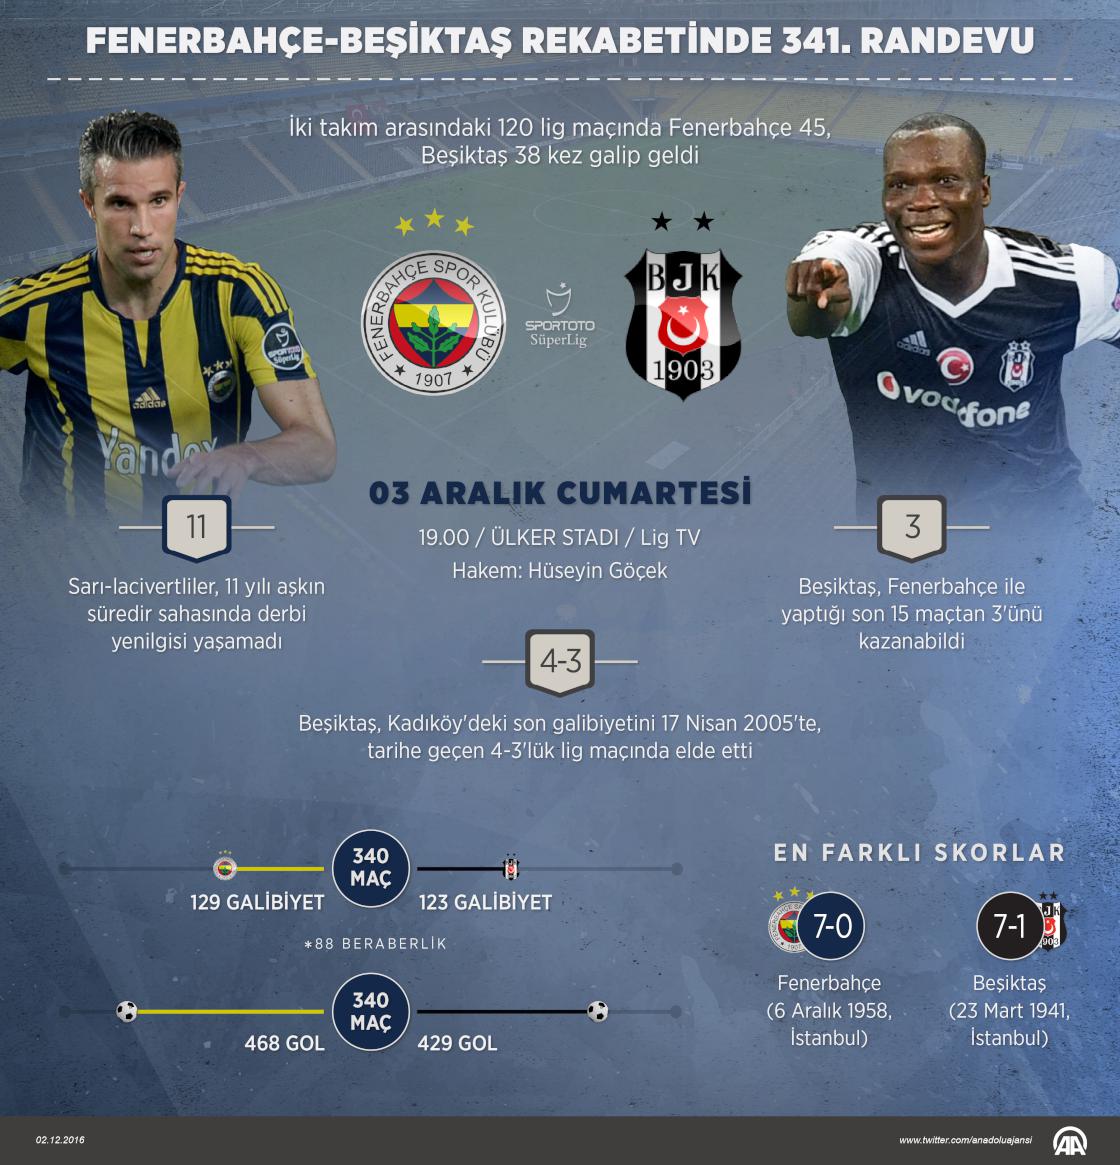 Fenerbahçe-Beşiktaş rekabetinde 341. randevu